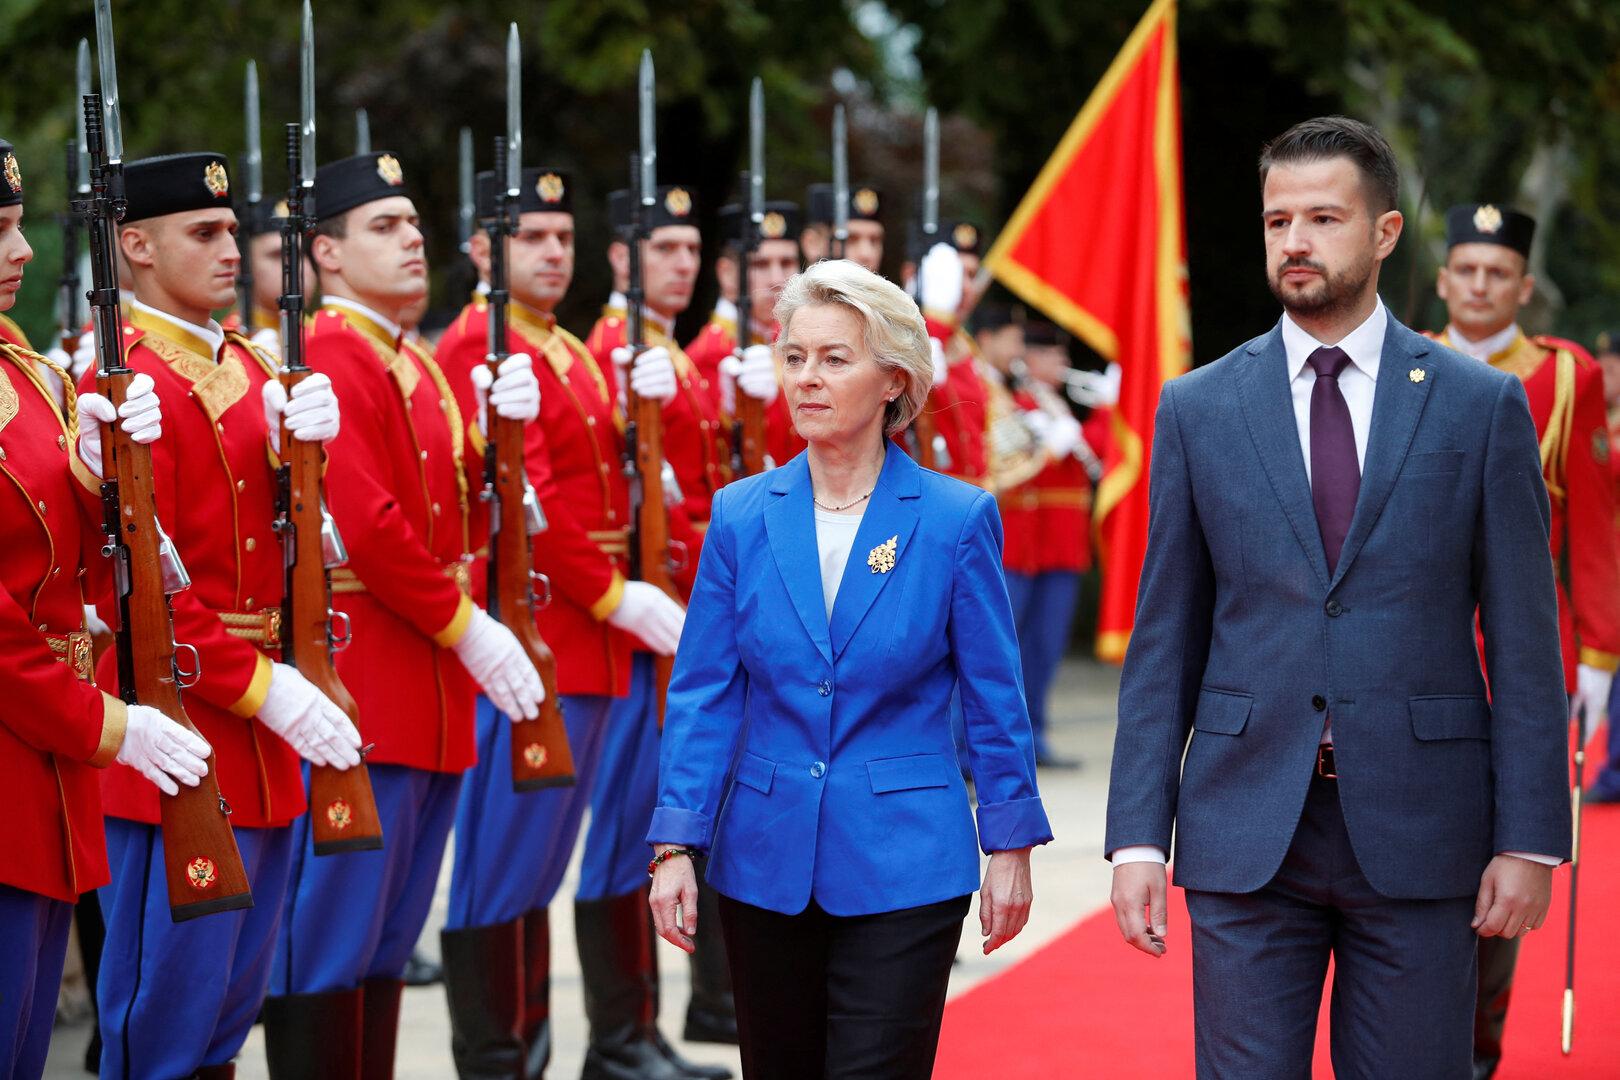 Montenegro, der kleine große Vorreiter: Geht sich der EU-Beitritt 2028 aus?